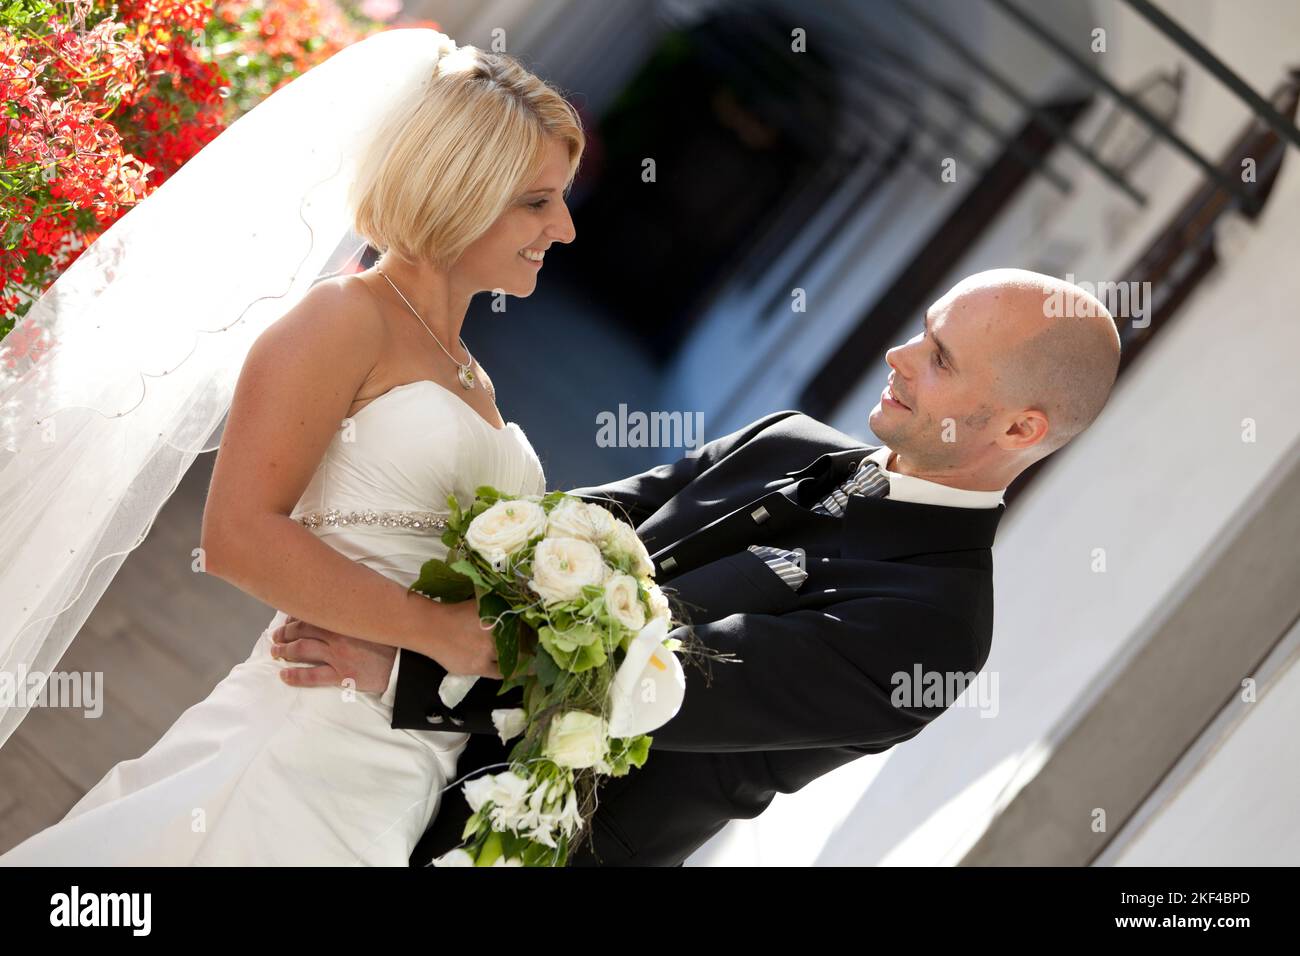 Ein glückliches Brautpaar mit Brautstrauss freut sich über die Hochzeit, Blond, Blonde, Blondine, 30, 35, Jahre, Anzugträger, Foto Stock